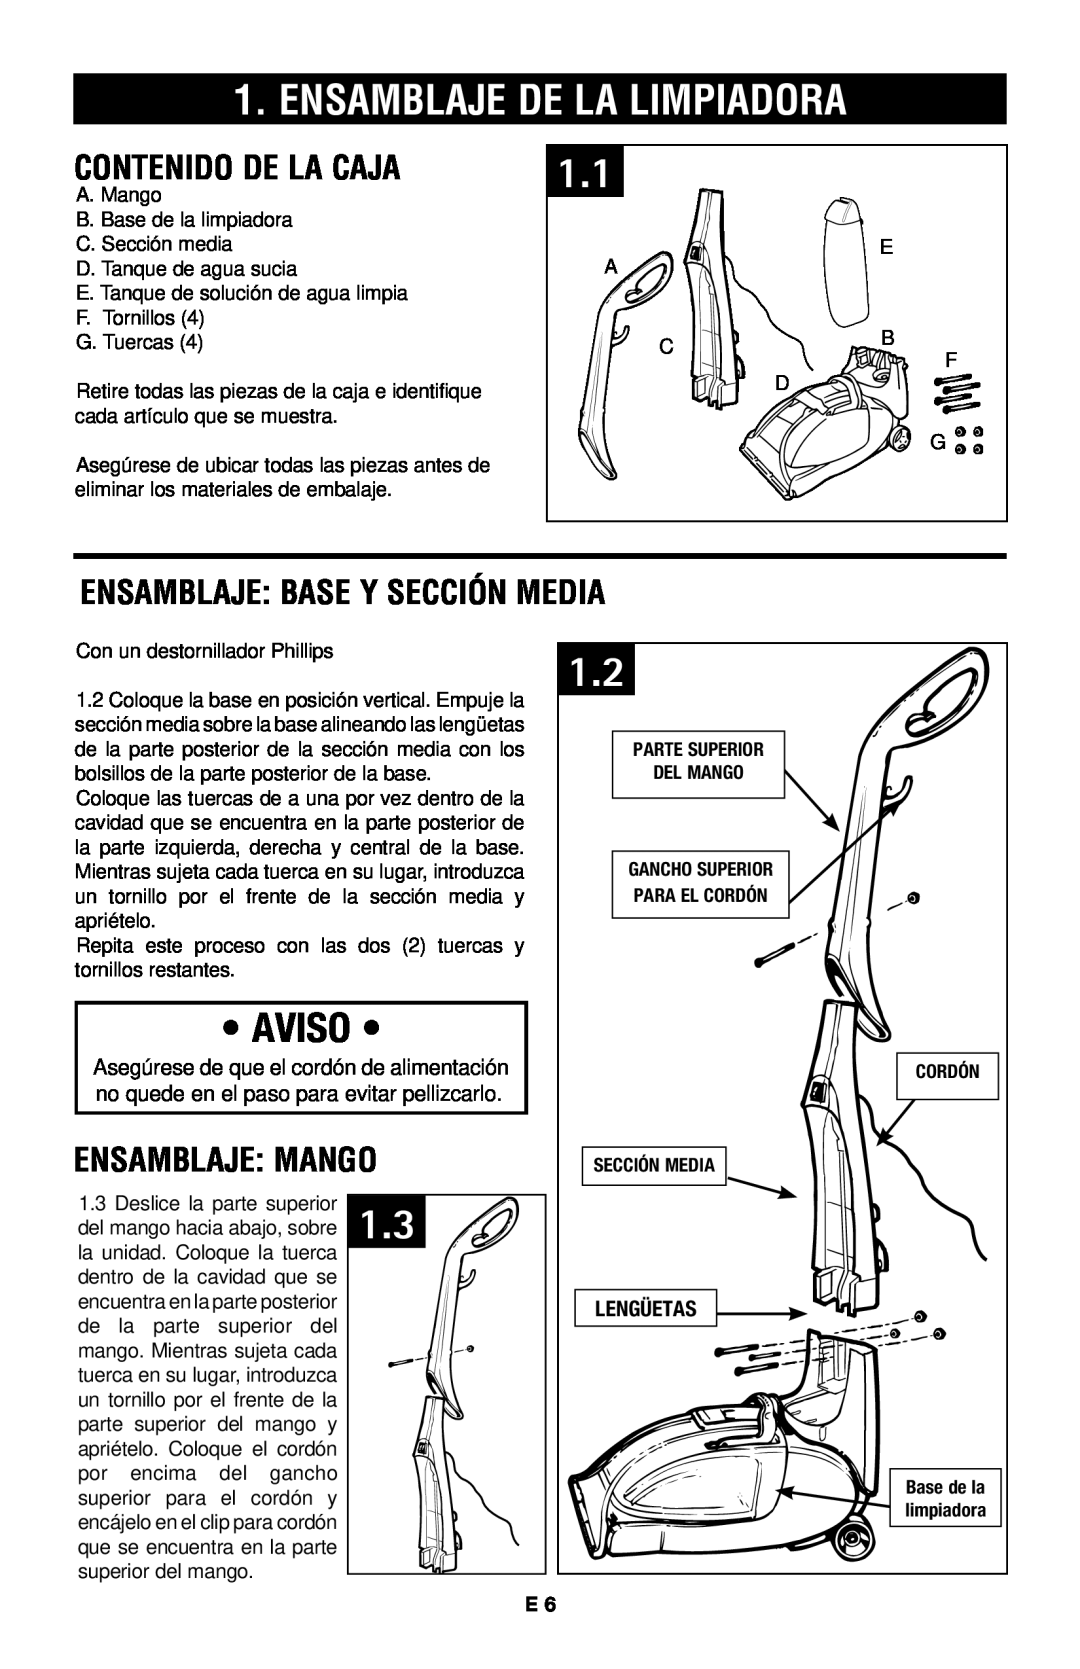 Hoover E1 owner manual Contenido De La Caja, Ensamblaje Base Y Sección Media, Ensamblaje Mango, Aviso, Lengüetas 